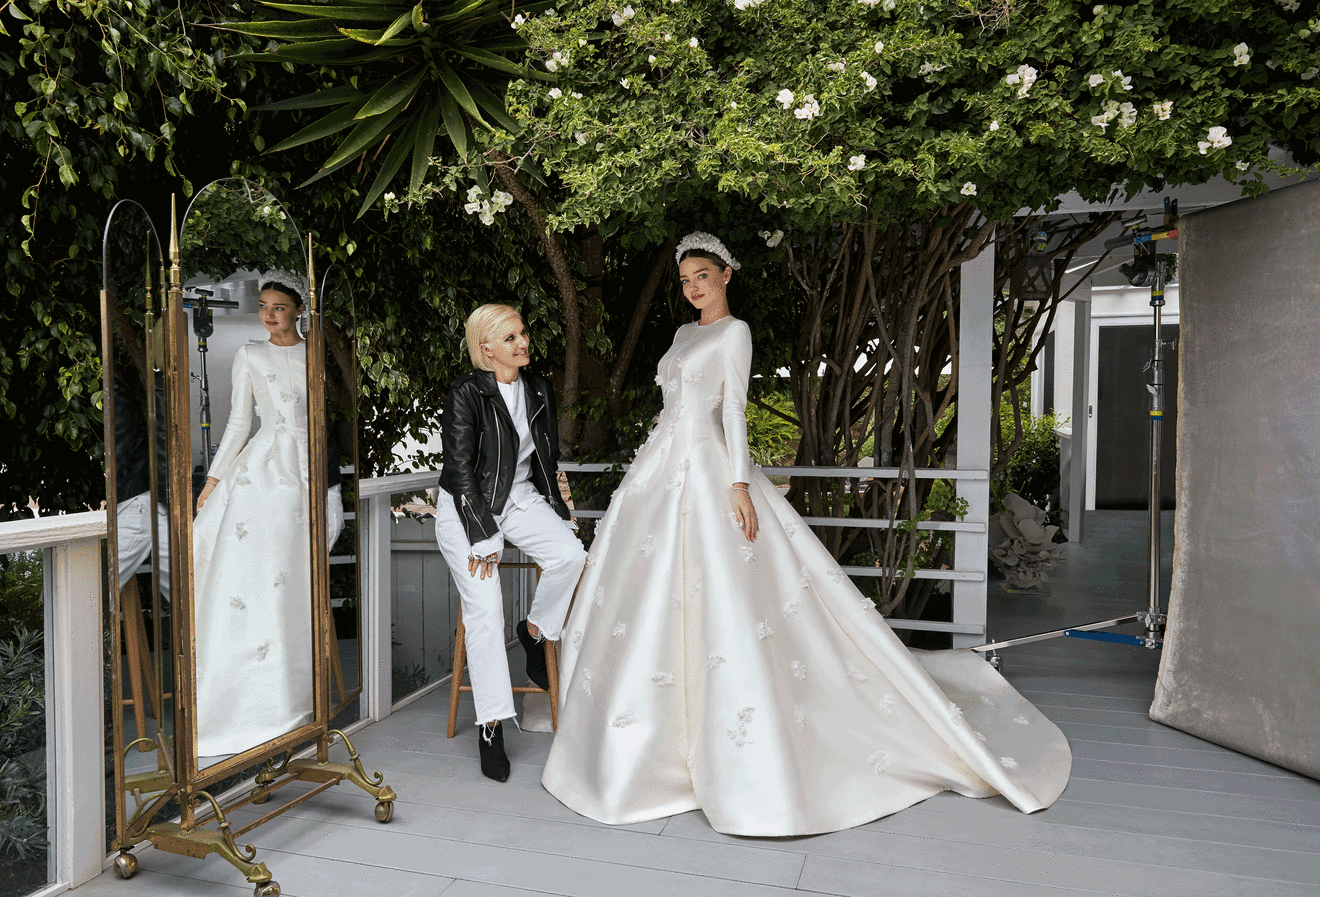 Miranda Kerr là một trong những người mẫu nổi tiếng thế giới, và việc chụp ảnh cưới của cô là một sự kiện được mong chờ. Những tấm ảnh cưới của Miranda Kerr luôn nhận được sự quan tâm và tán dương từ cộng đồng mạng. Hãy xem và cảm nhận sự tinh tế và đẹp đẽ của bộ ảnh này.